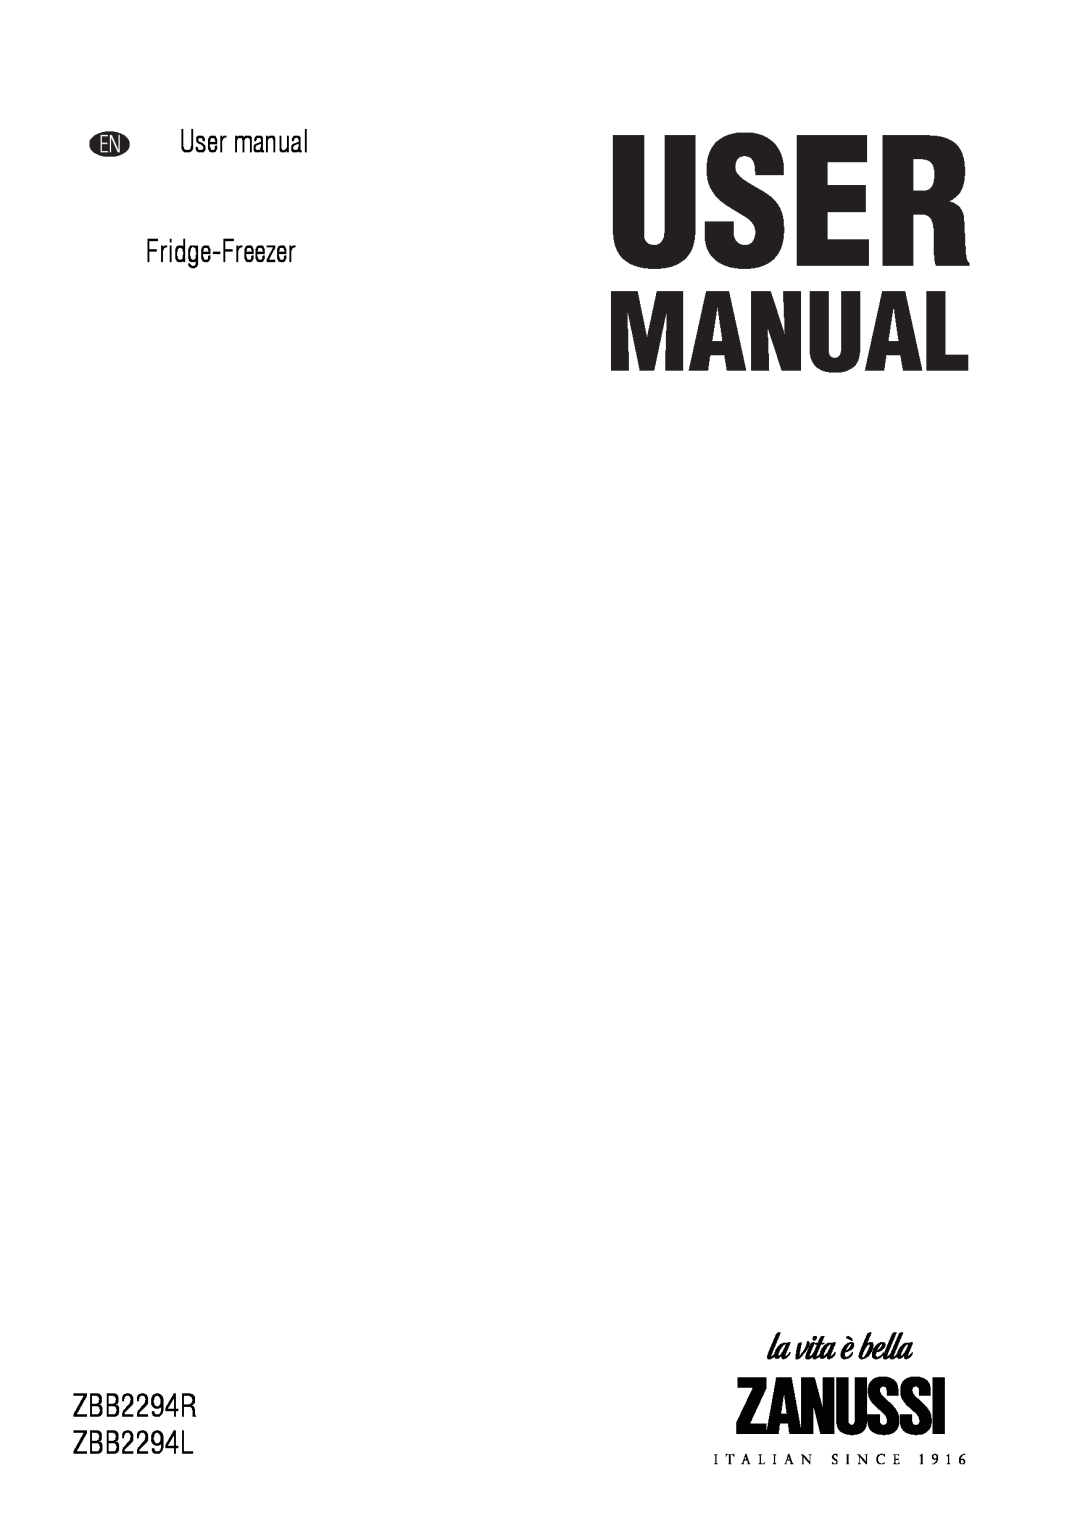 Zanussi user manual Fridge-Freezer, ZBB2294R ZBB2294L 